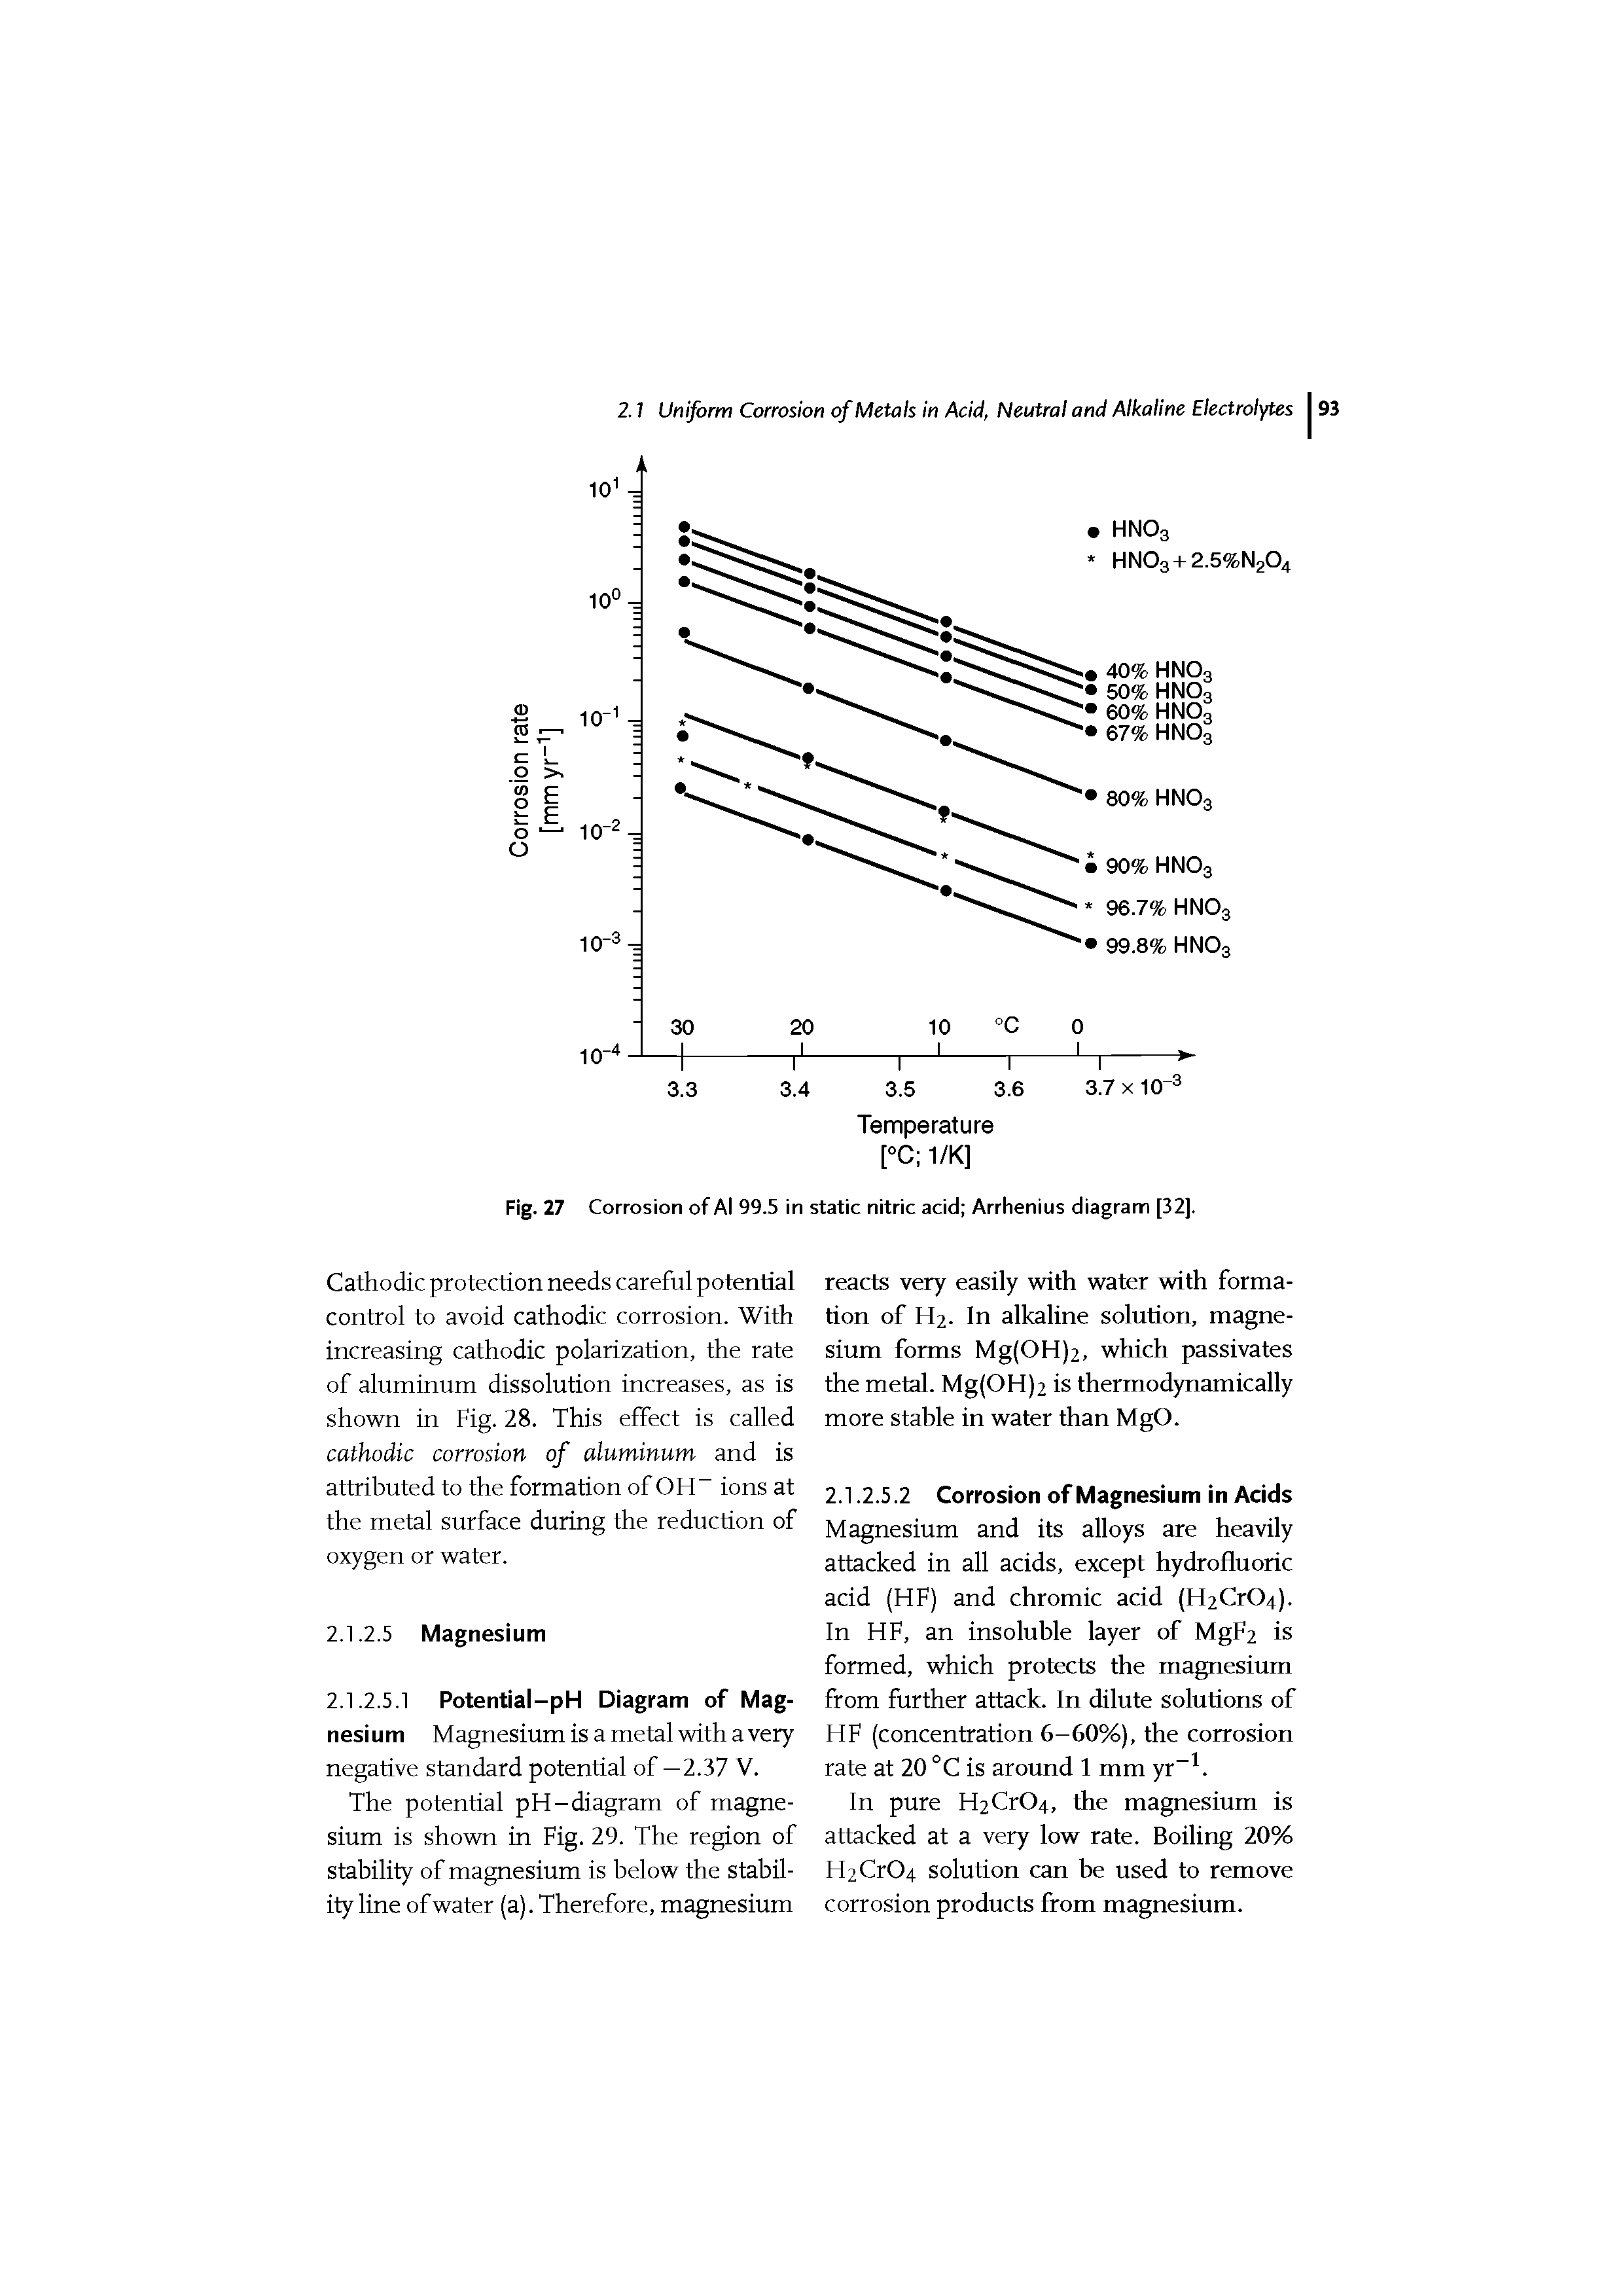 Fig. 27 Corrosion of Al 99.5 in static nitric acid Arrhenius diagram [32].